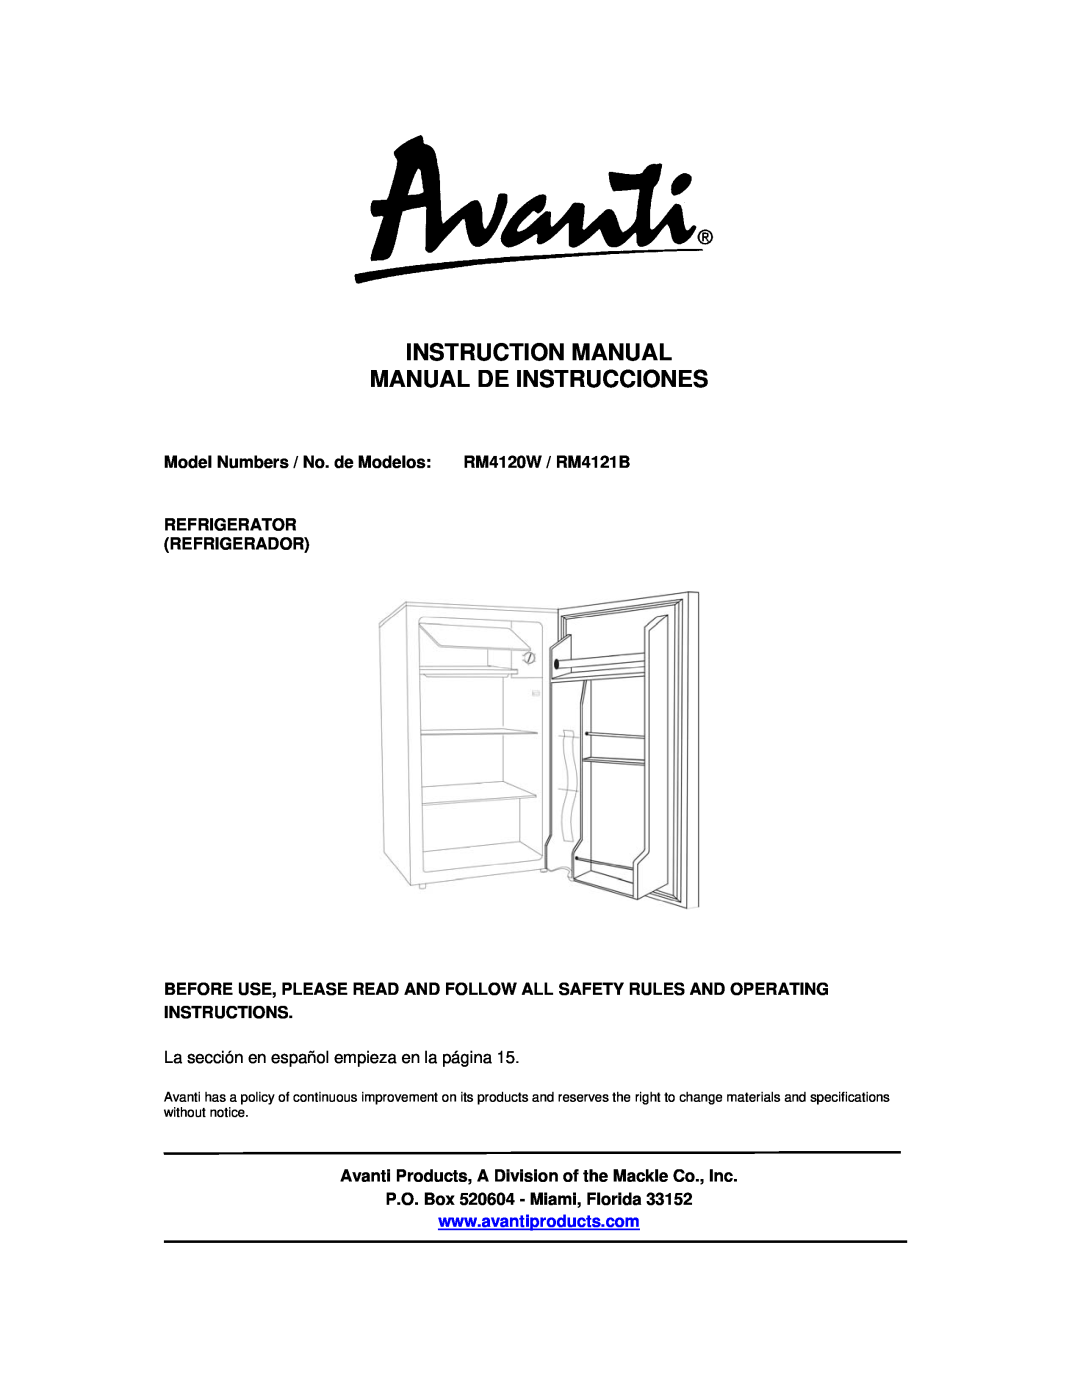 Avanti instruction manual Model Numbers / No. de Modelos RM4120W / RM4121B, Refrigerator Refrigerador 